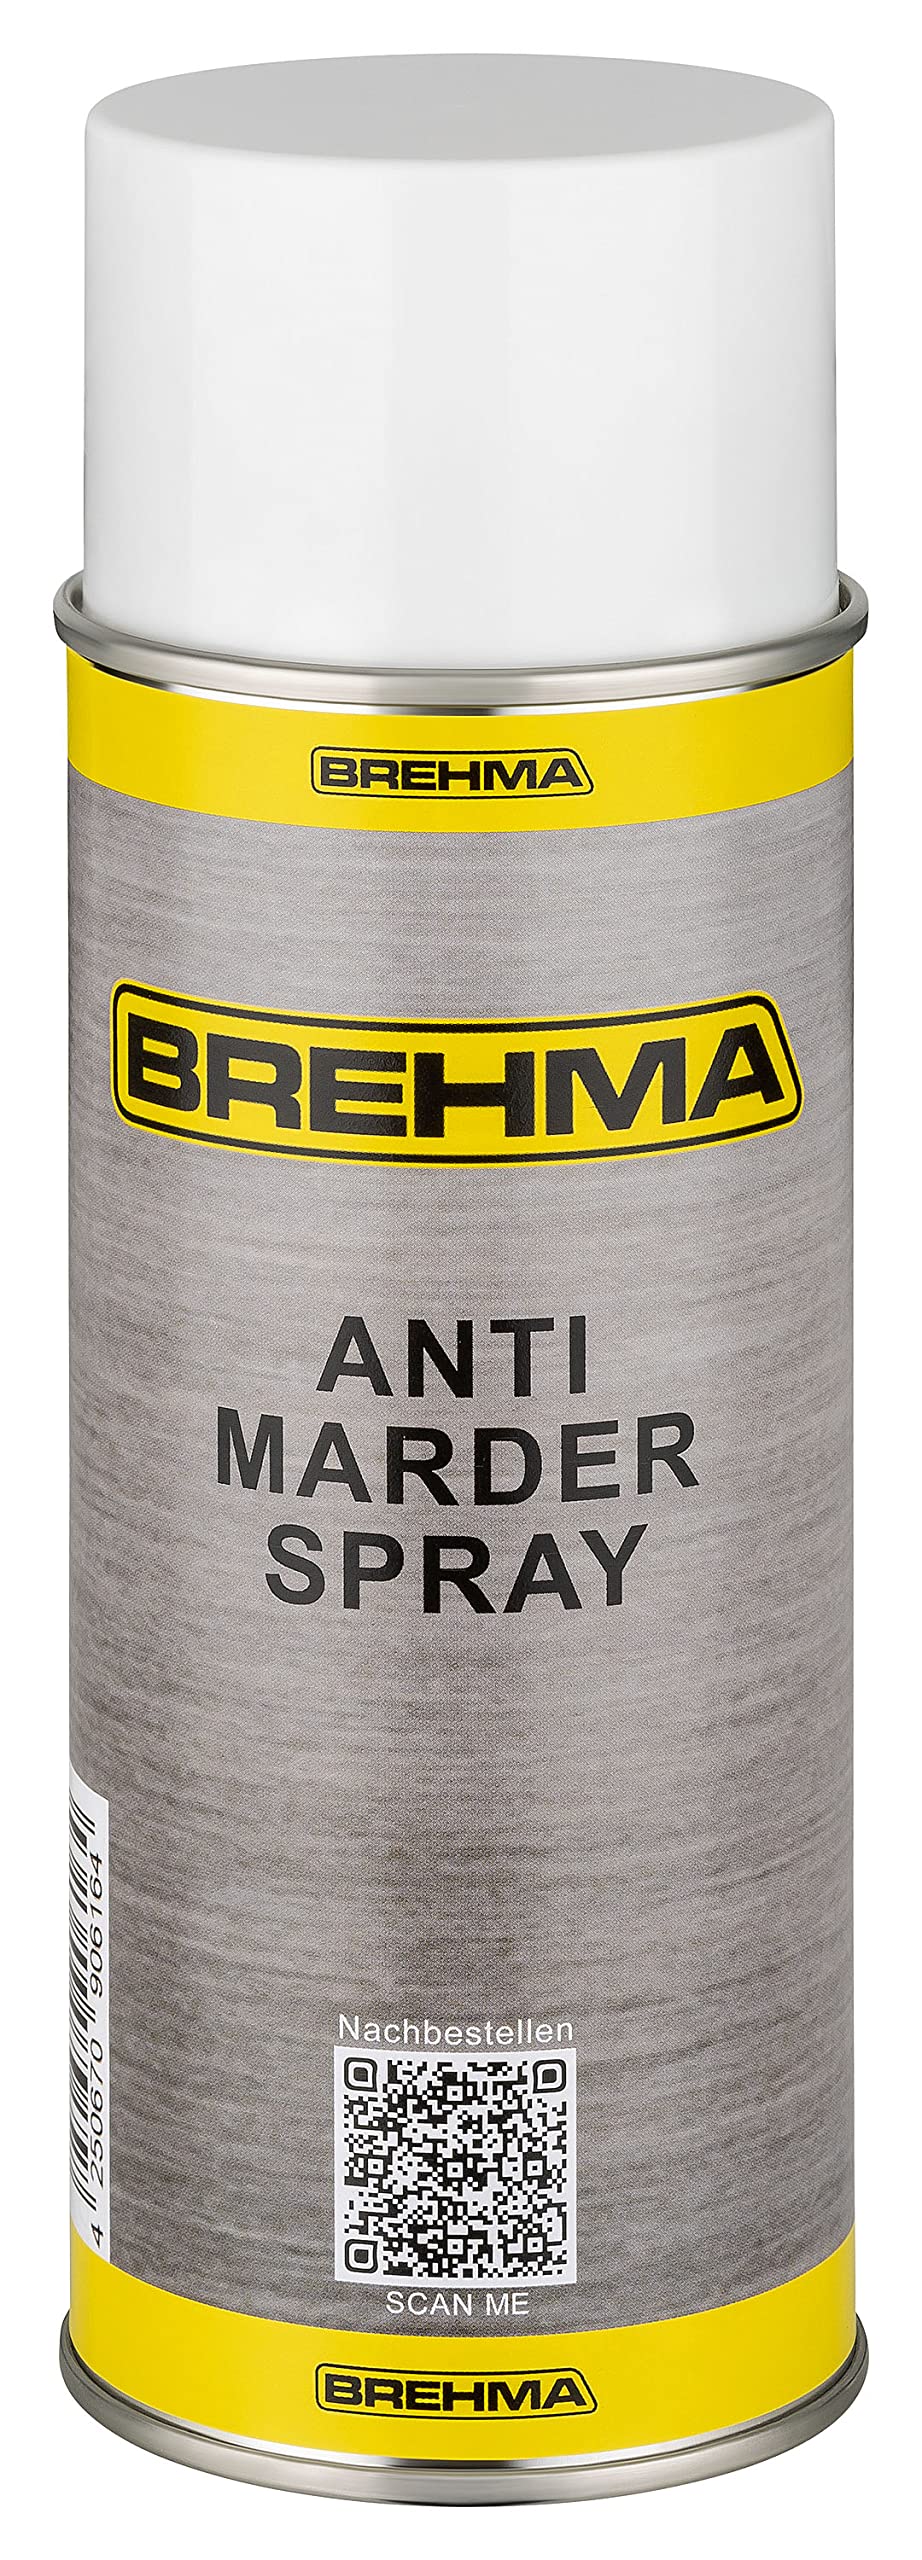 BREHMA Antimarderspray Marderschreck Marder Spray Marderabwehr 400ml von BREHMA